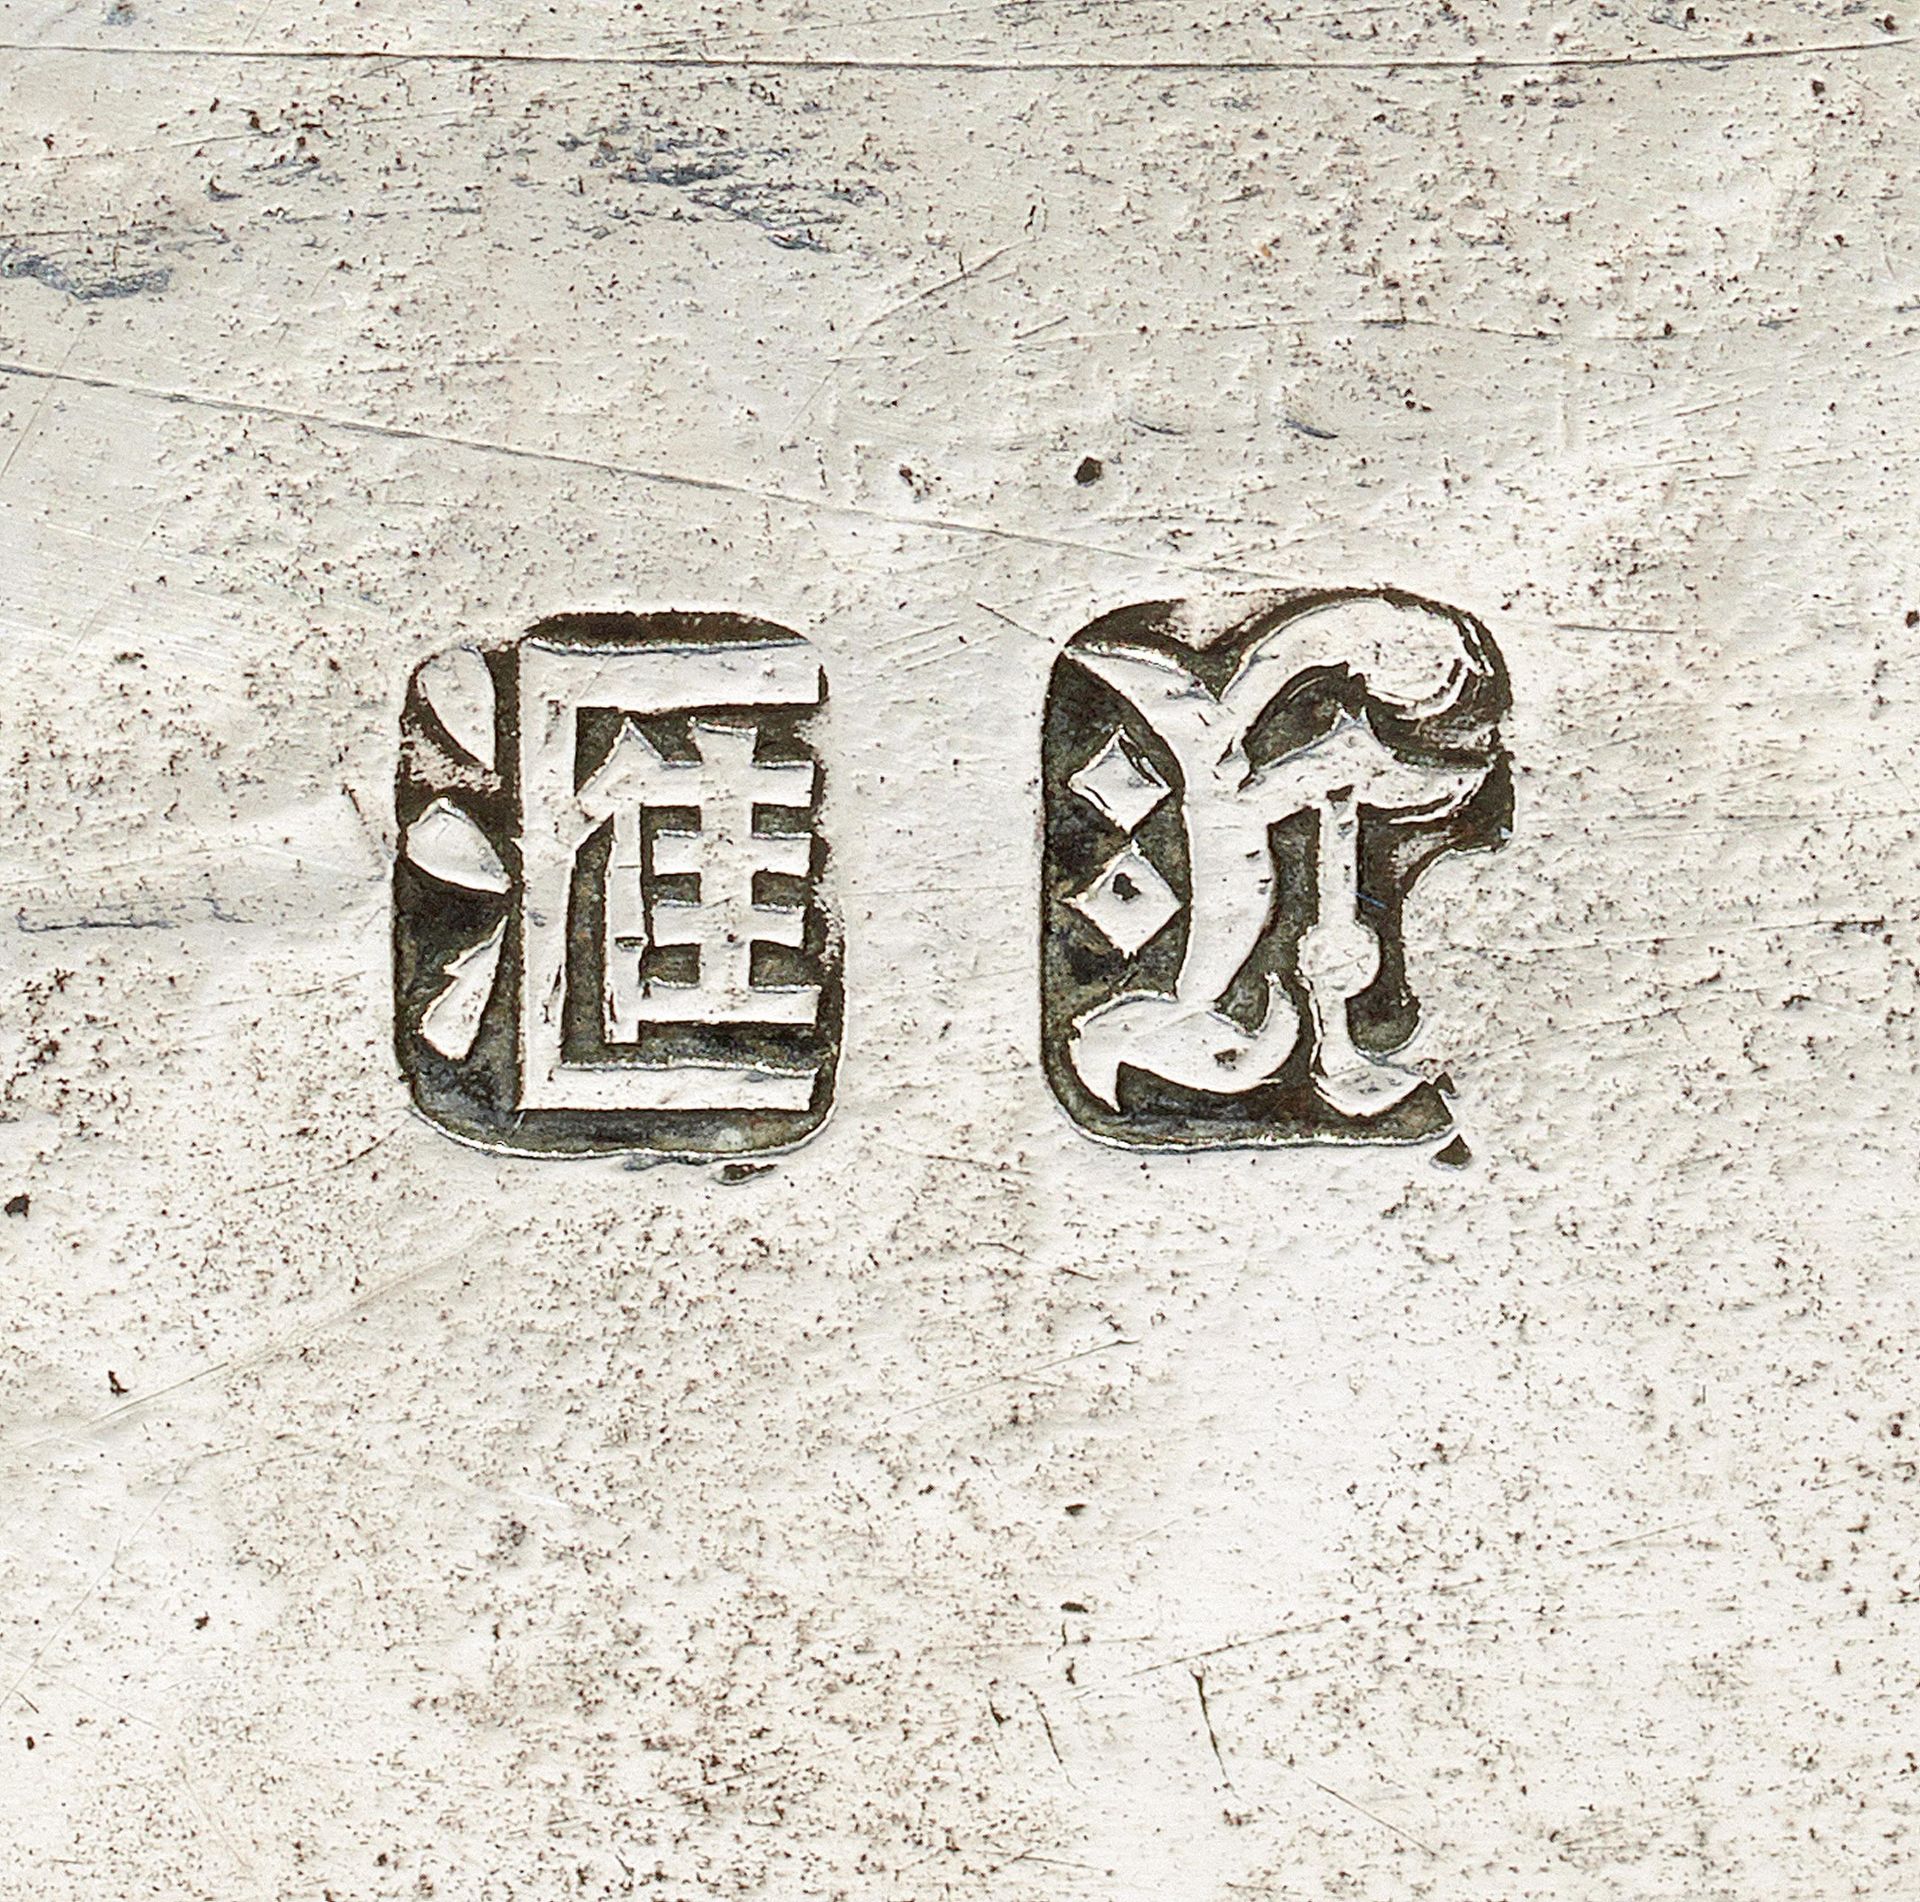 UNGEWÖHNLICHES UND GROSSES SILBERTABLETT MIT WIDMUNG. China, Kanton. Qing-Dynastie. Datiert 15. - Bild 2 aus 2